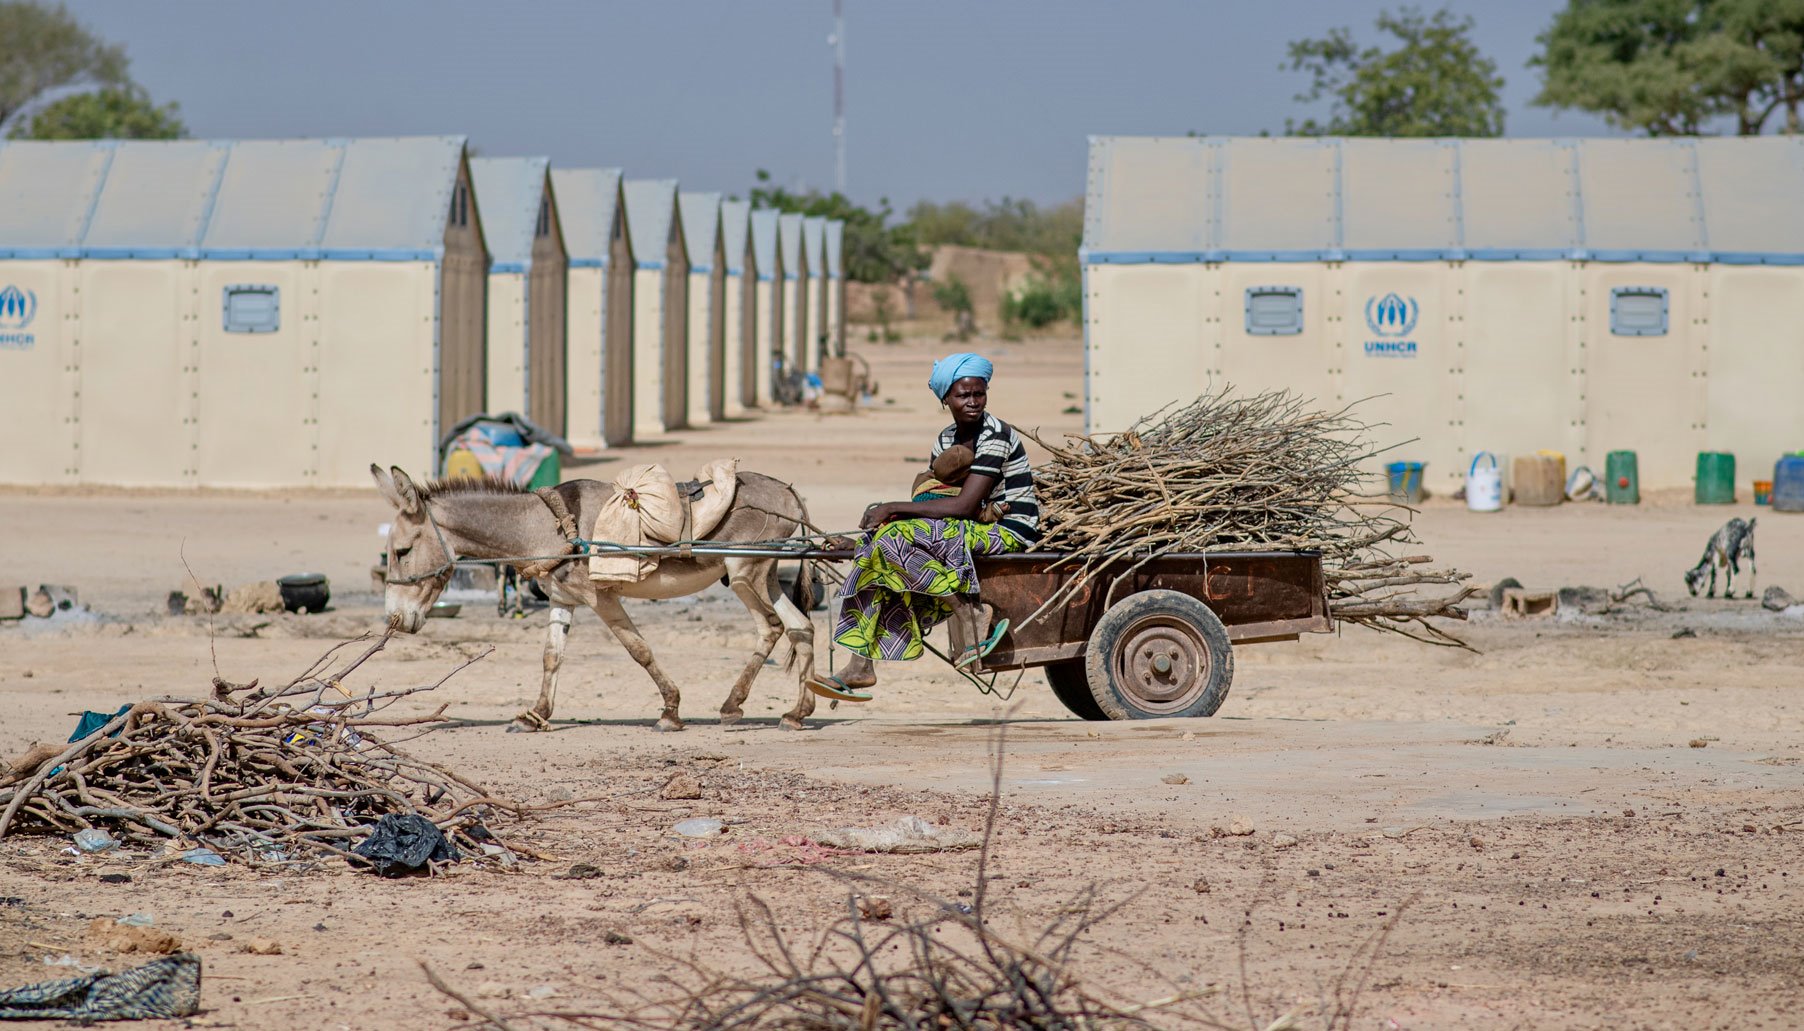 Read Burkina Faso: Inside the Turmoil by Oxfam International